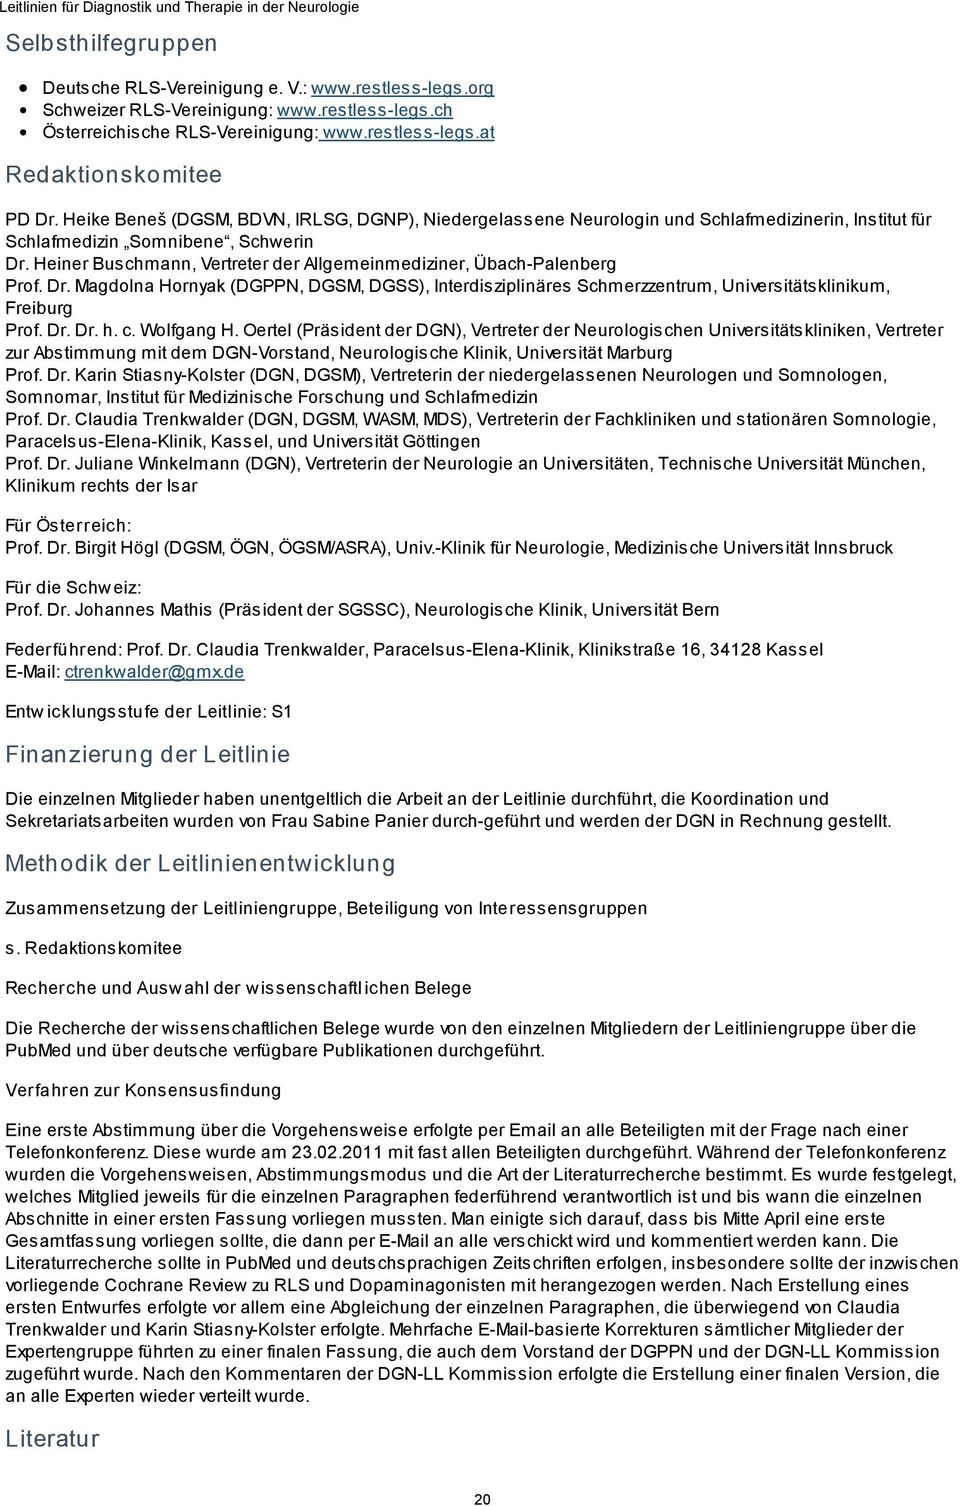 Heiner Buschmann, Vertreter der Allgemeinmediziner, Übach-Palenberg Prof. Dr. Magdolna Hornyak (DGPPN, DGSM, DGSS), Interdisziplinäres Schmerzzentrum, Universitätsklinikum, Freiburg Prof. Dr. Dr. h.